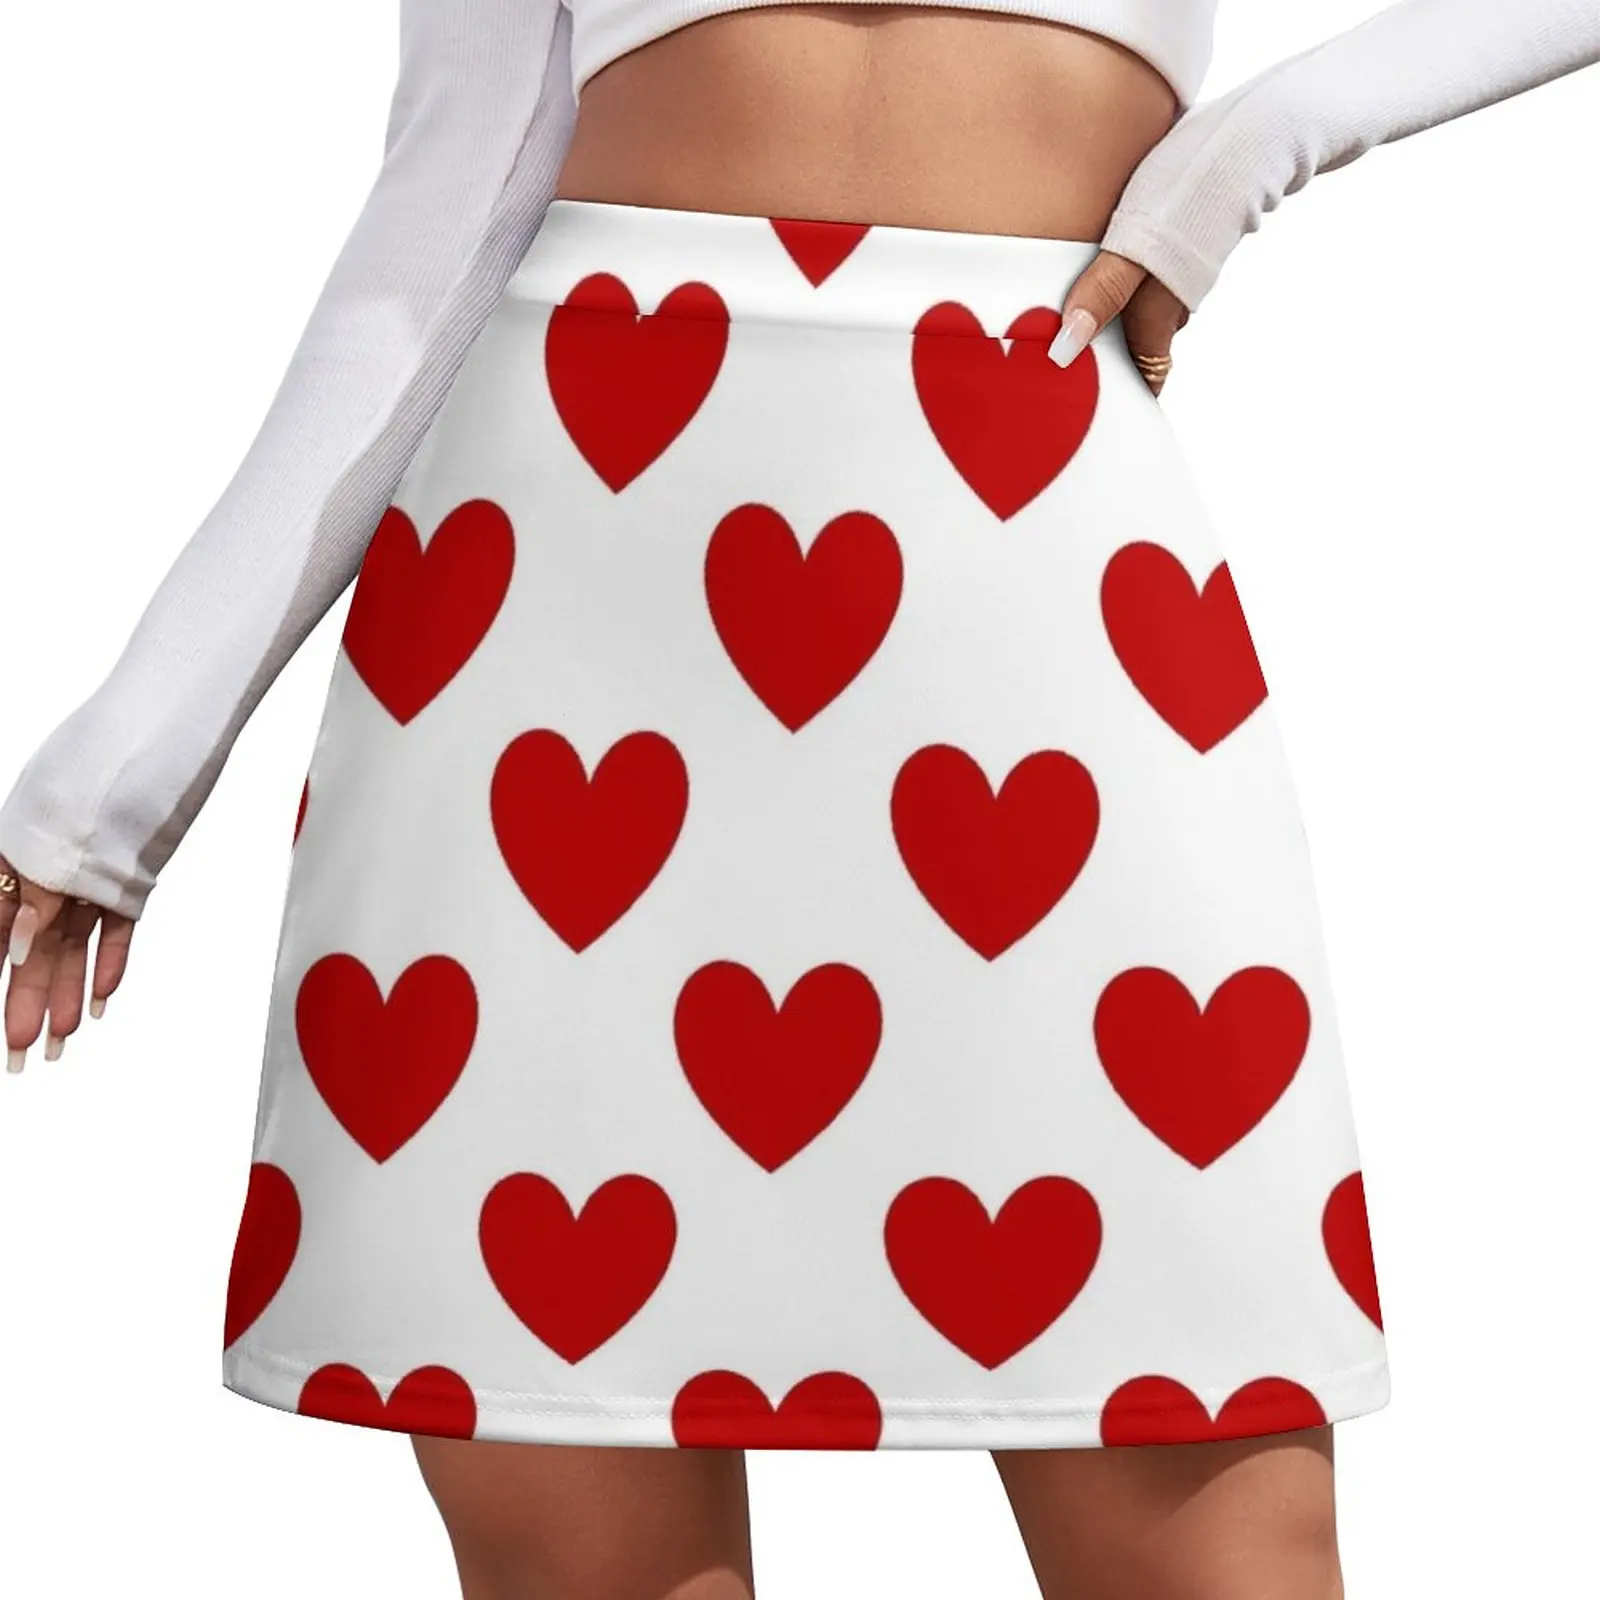 Red Hearts Mini Skirt Women's skirt Woman short skirt korean style clothes